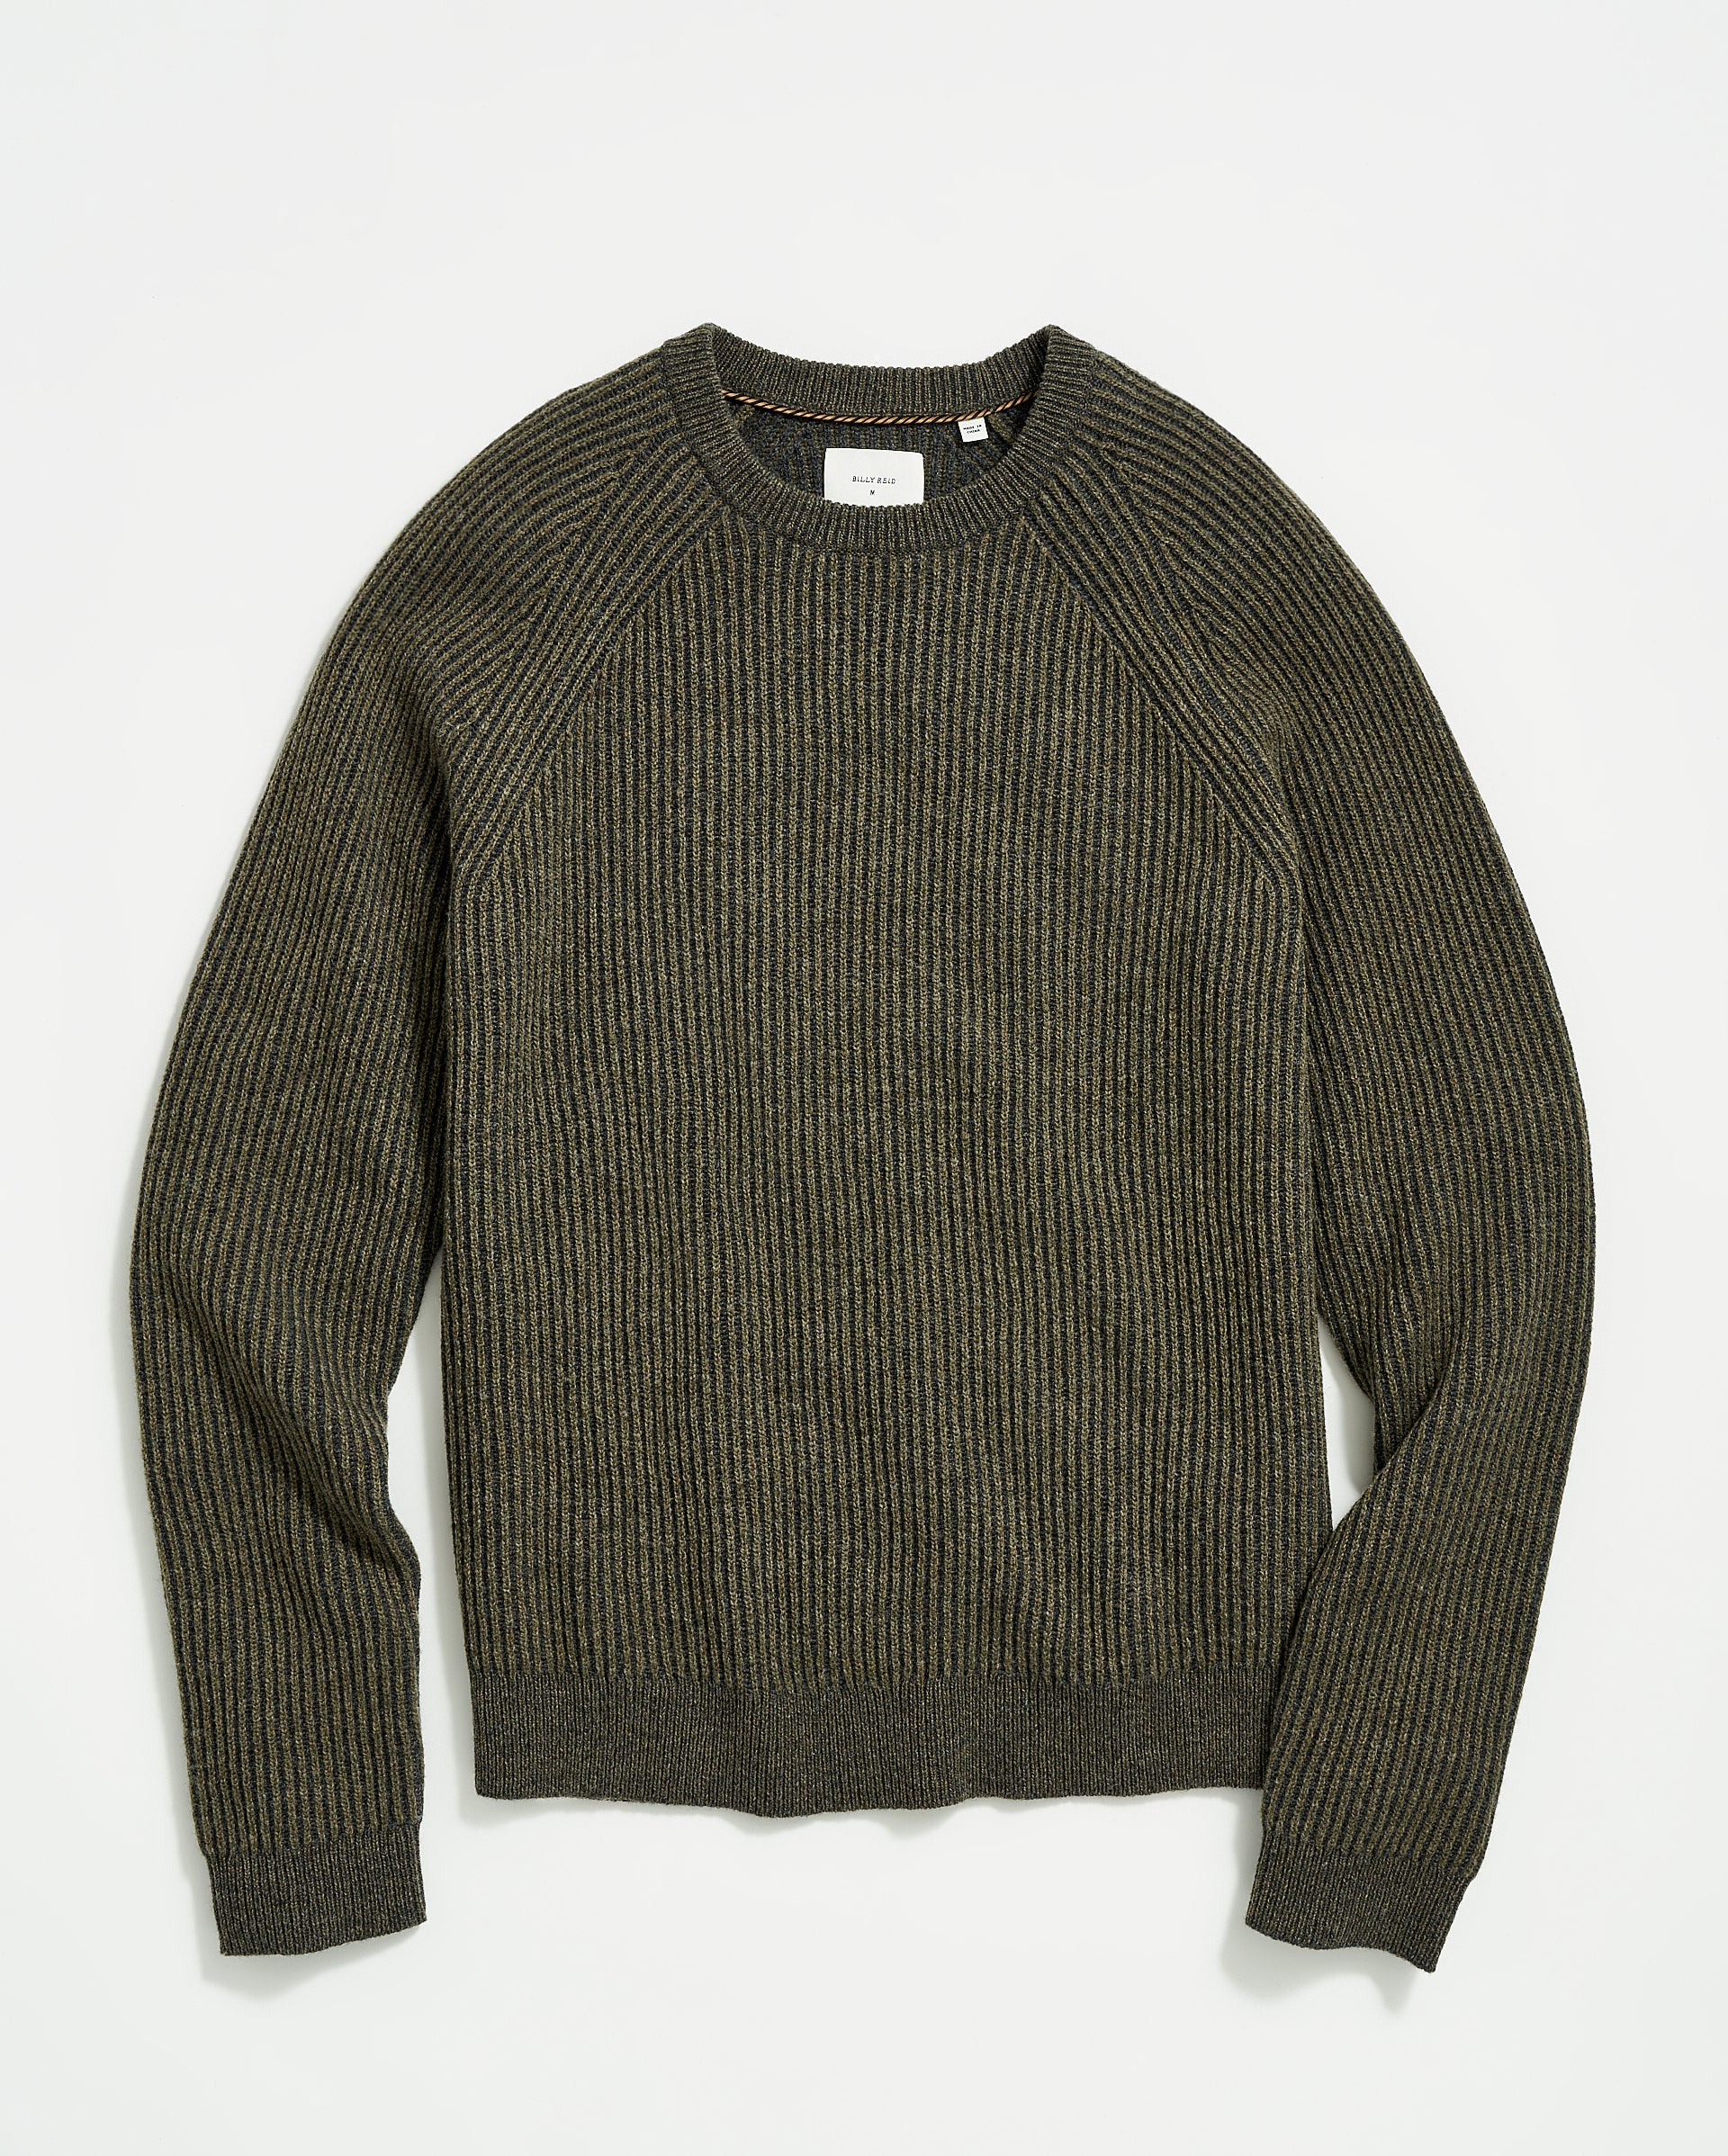 Billy Reid Fisherman Rib Crew Sweater - Olive - Green